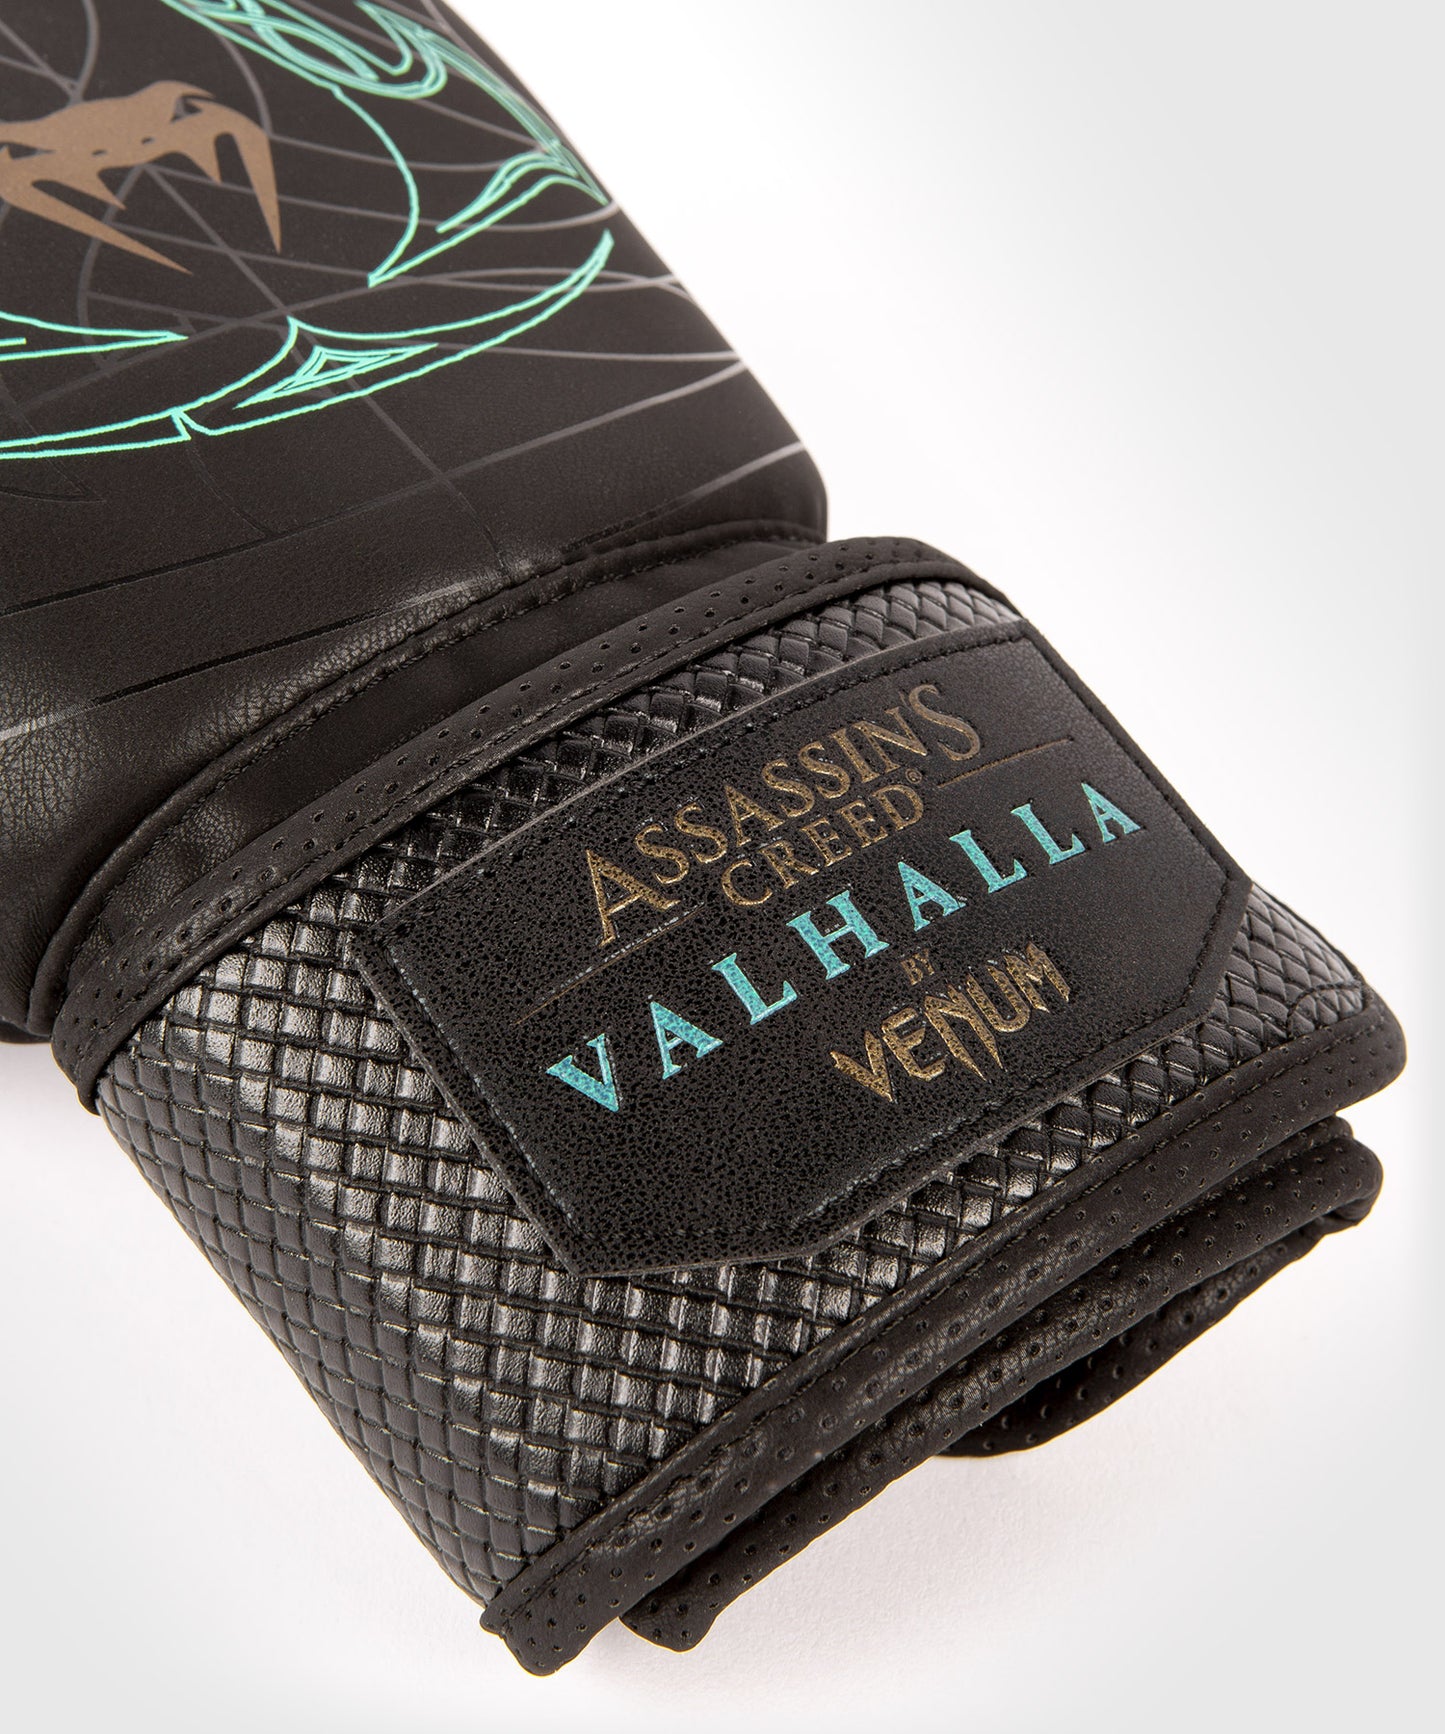 Боксерские перчатки Venum Assassin's Creed - черный/синий